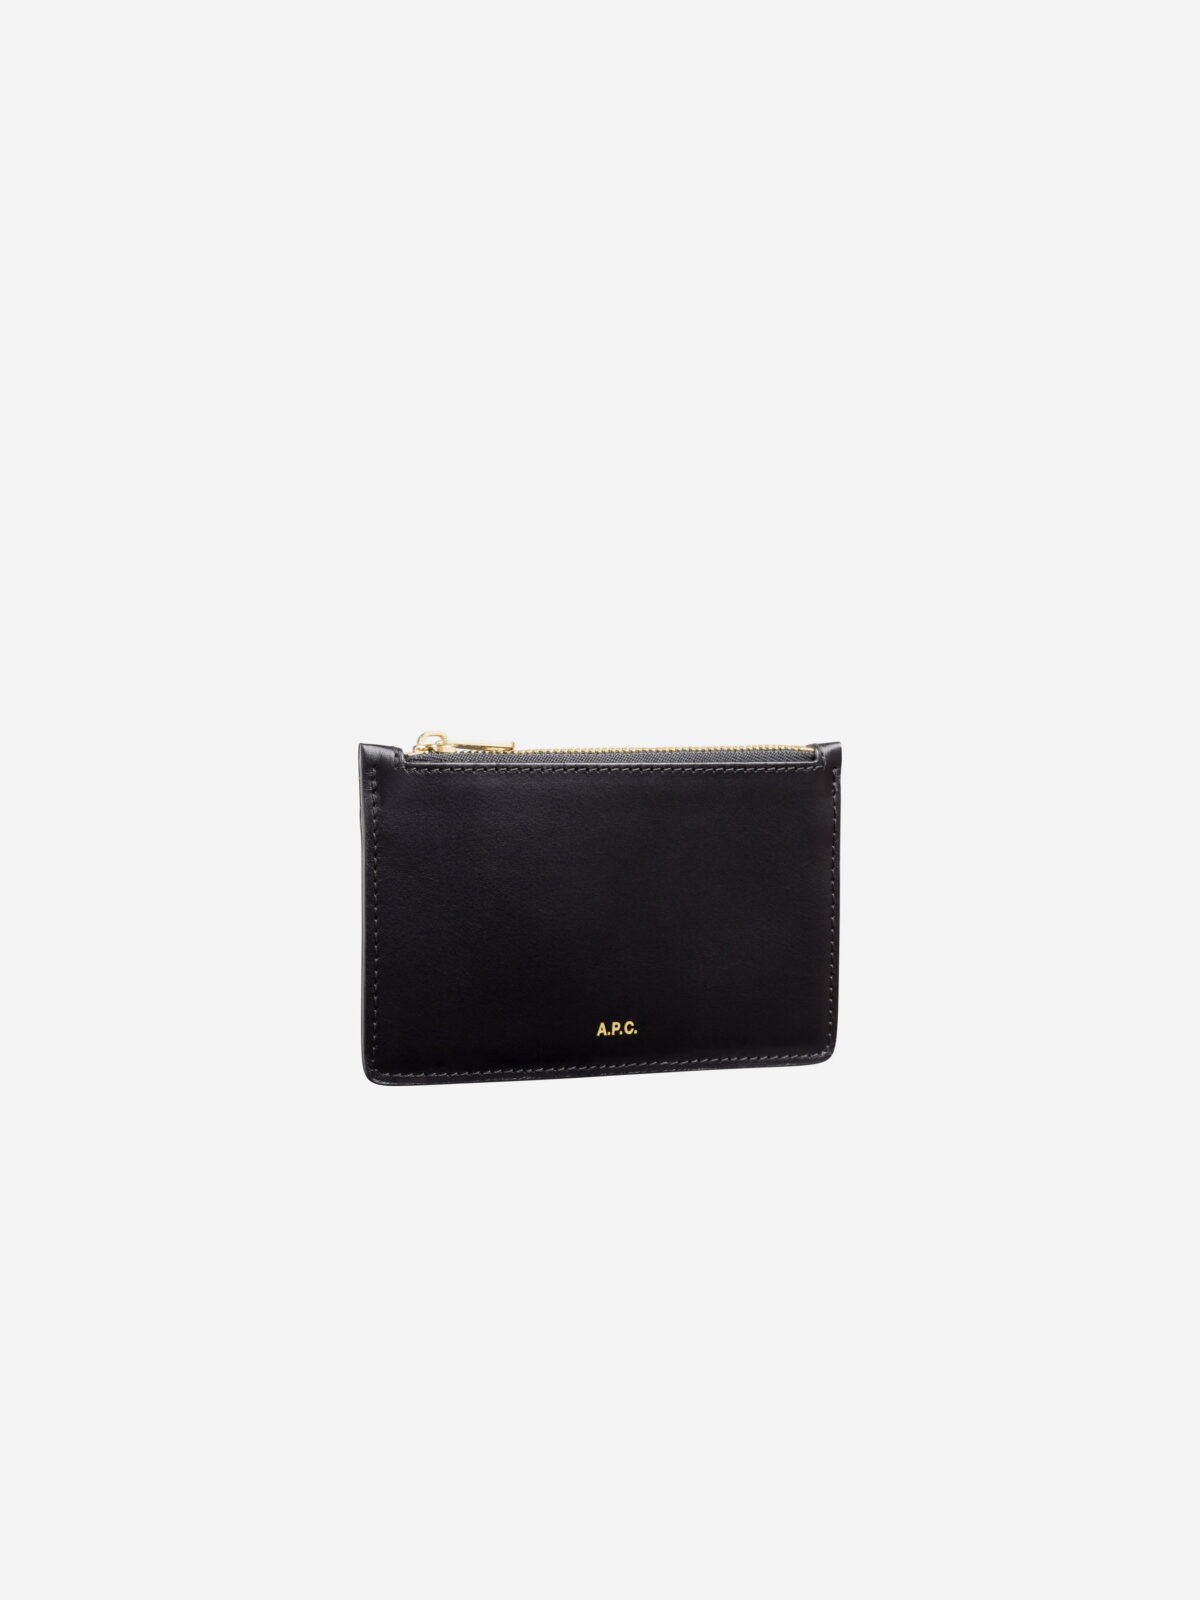 willow-black-leather-cardholder-wallet-a.p.c.-paris-matchboxathens